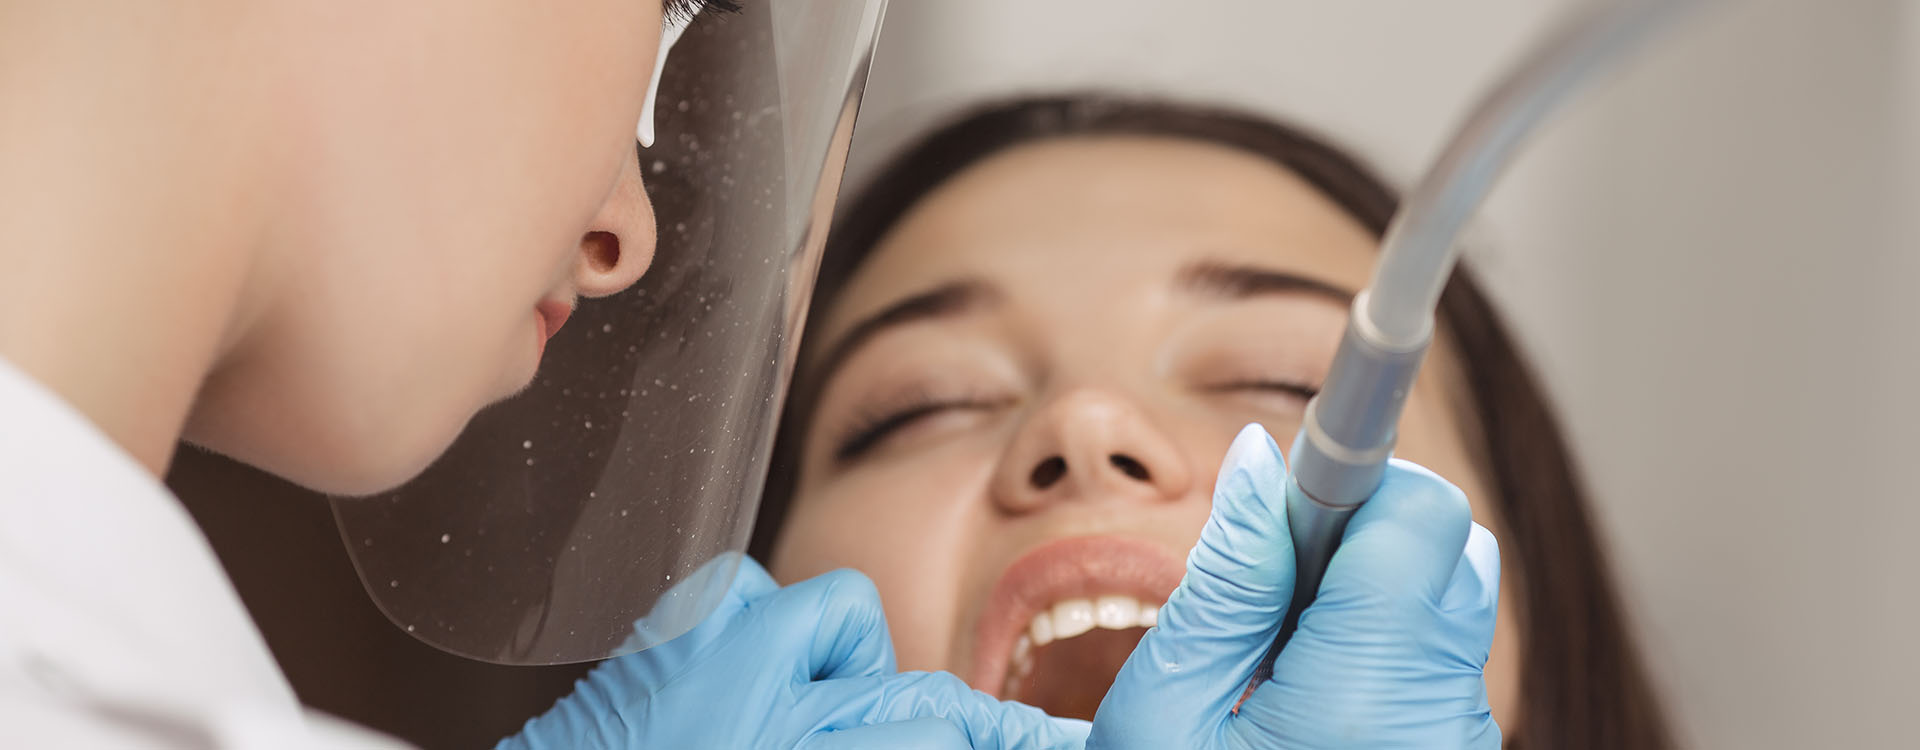 Clínica Dental Andrea Compte, tu Centro Odontológico especializado. Odontología estética en Benicarló. Dentista realizando un tratamiento dental a una paciente.